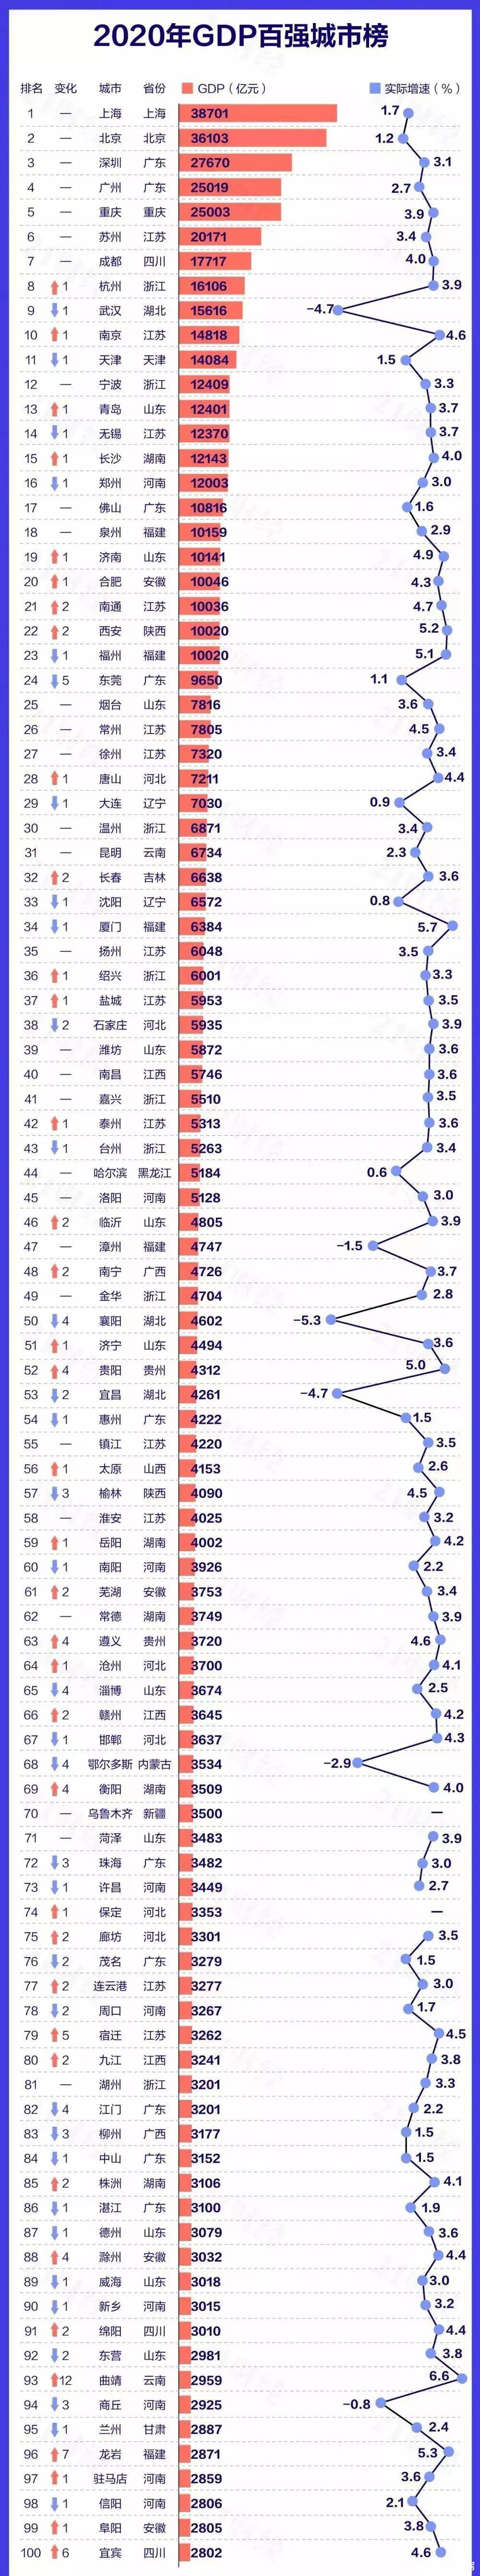 河南省九大经济百强市郑州gdp总量12003亿排在全国第16